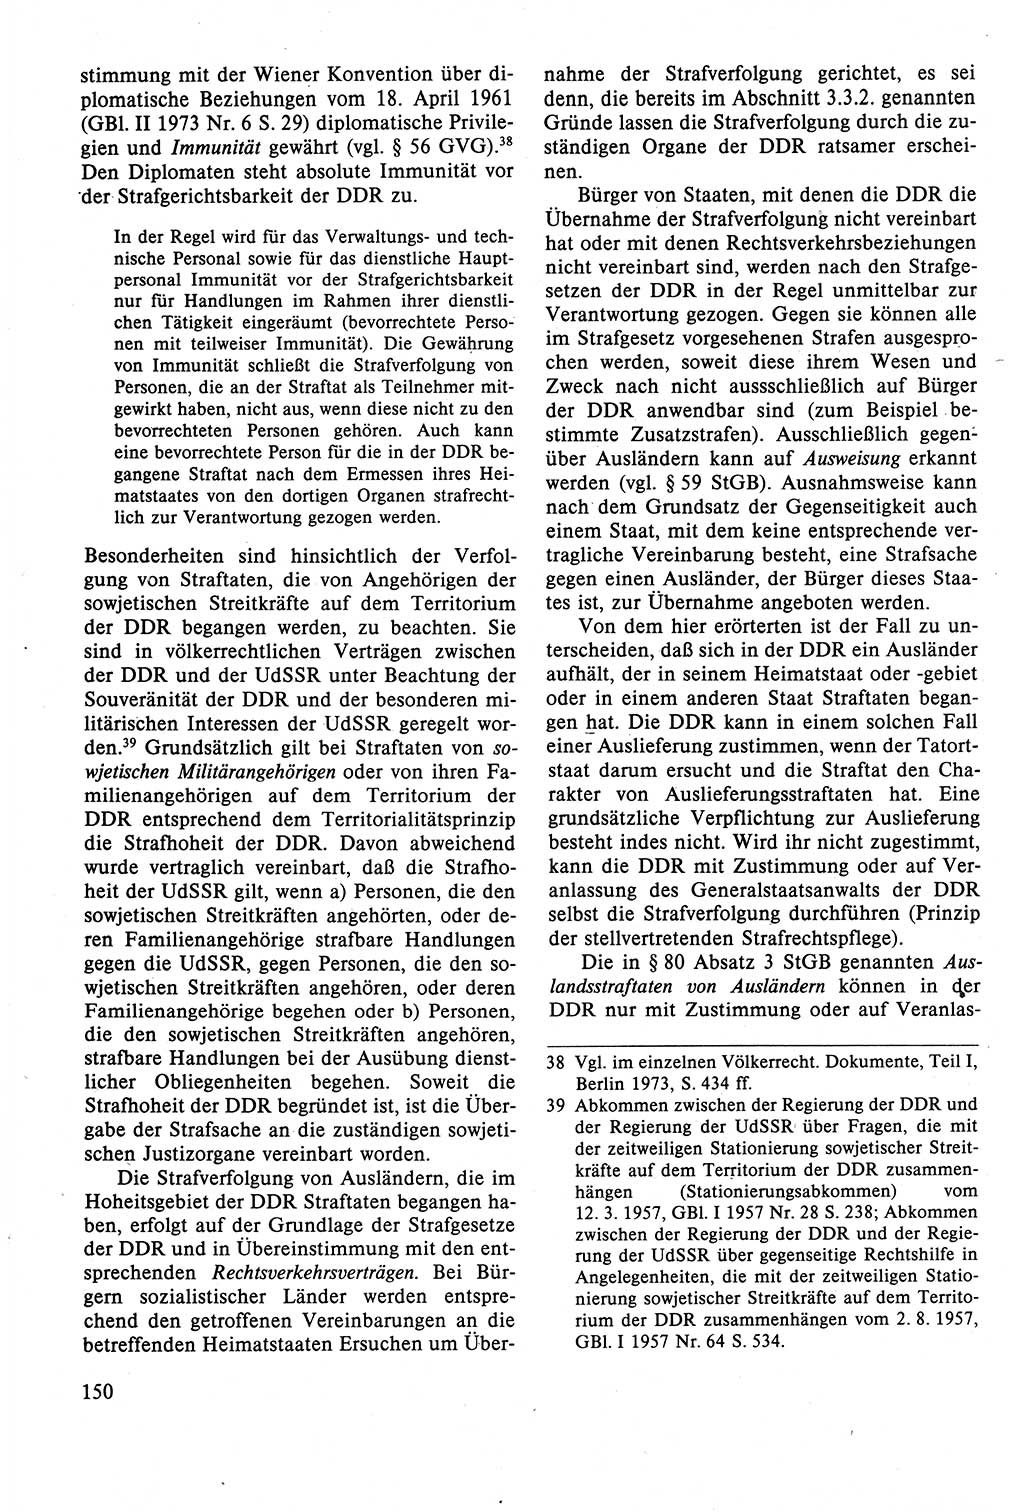 Strafrecht der DDR (Deutsche Demokratische Republik), Lehrbuch 1988, Seite 150 (Strafr. DDR Lb. 1988, S. 150)